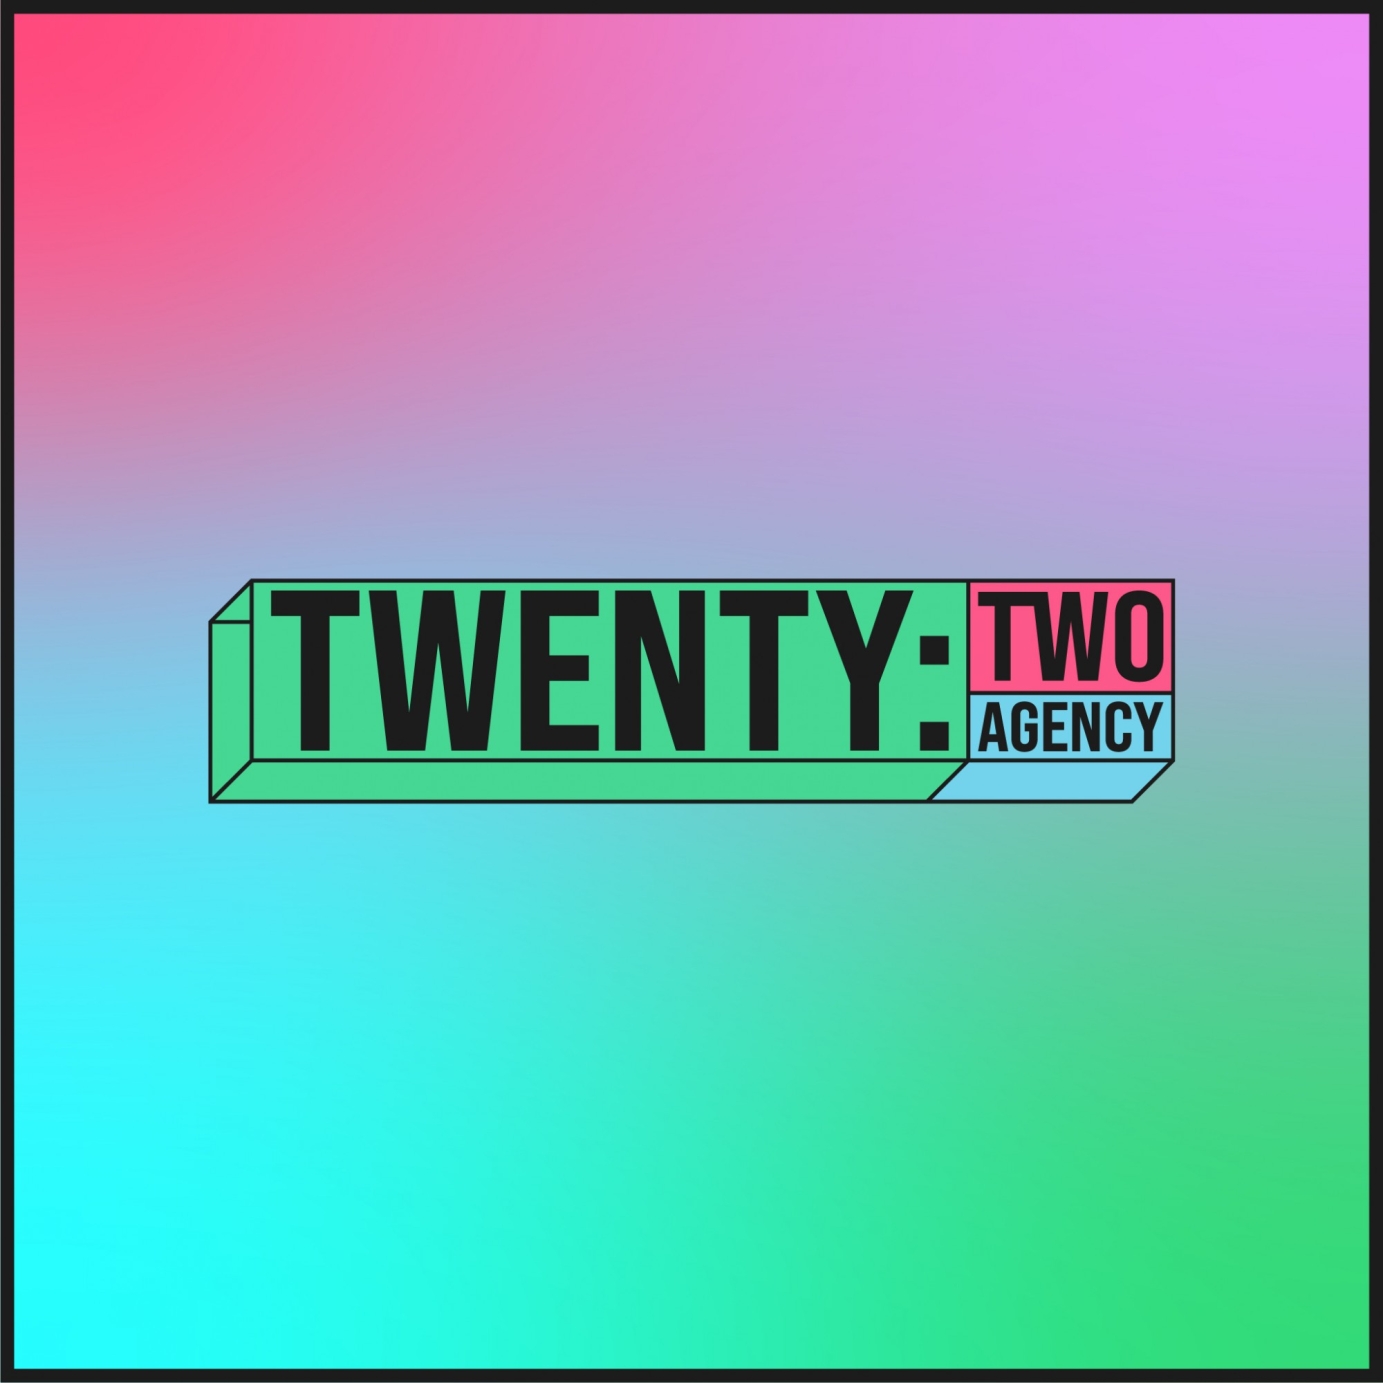 Twenty:Two Agency